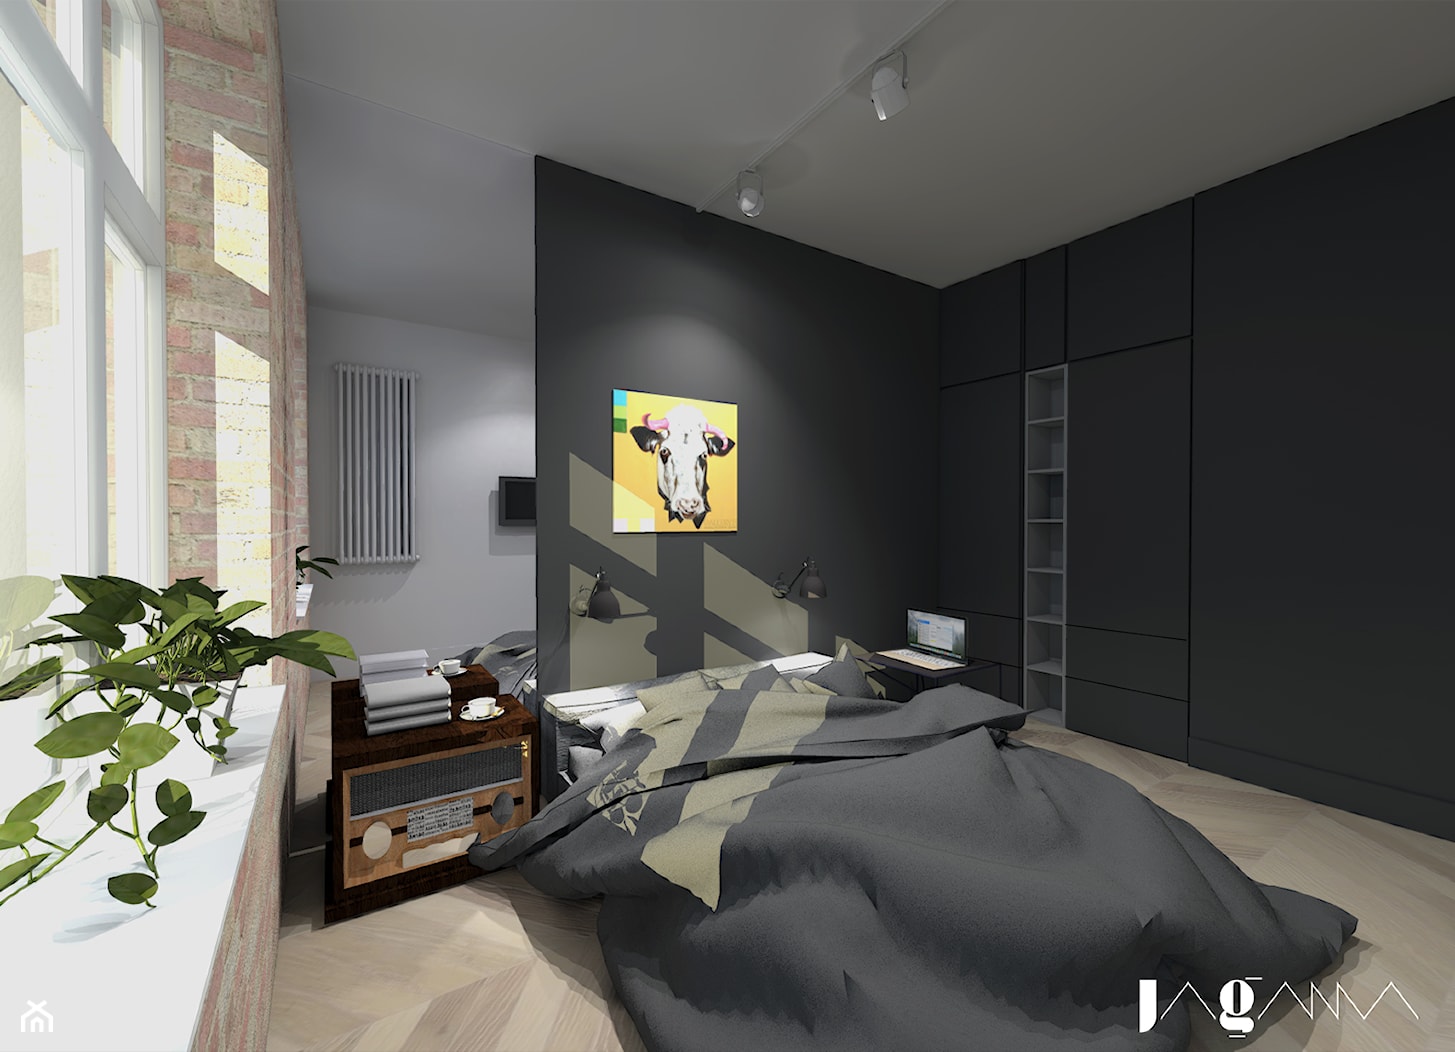 Mieszkanie w starej kamienicy - Średnia czarna szara sypialnia, styl nowoczesny - zdjęcie od magda jagannathan pracownia projektowa JAGANNA - Homebook